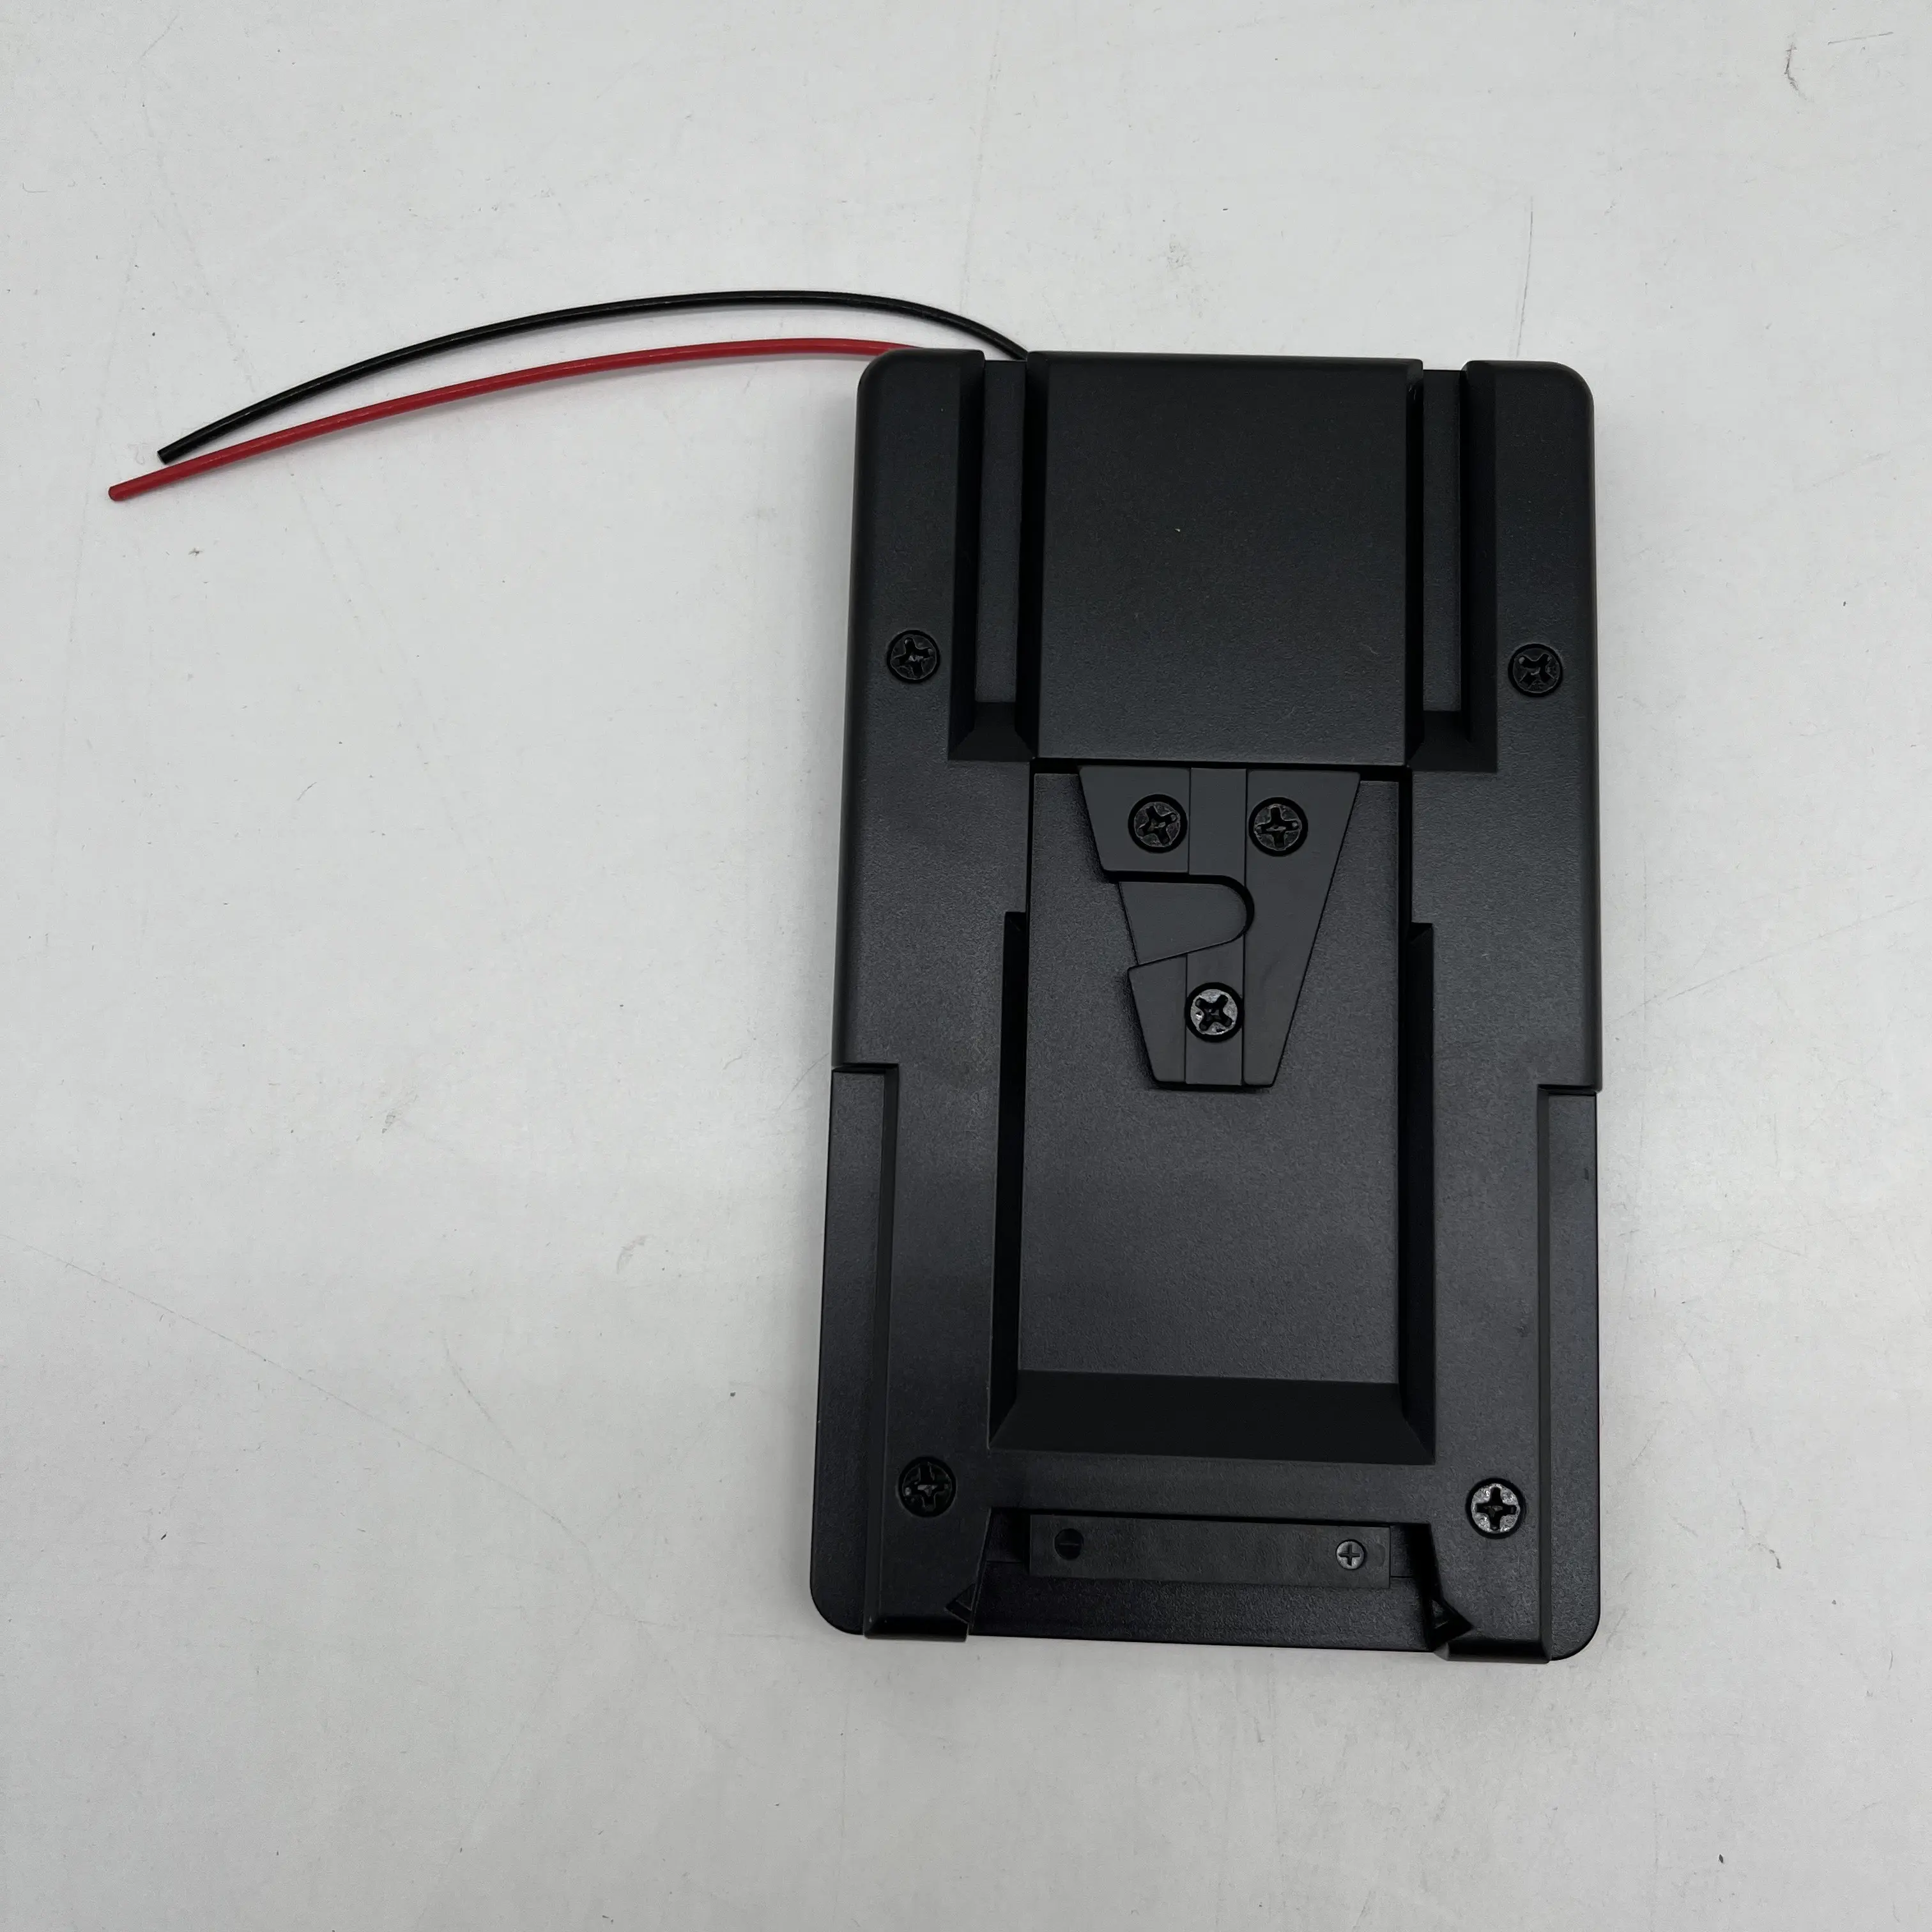 UC9558 v-lock v-mount pil adaptör plakası son-y DSLR DSLR Rig güç kaynağı için dönüştürücü için